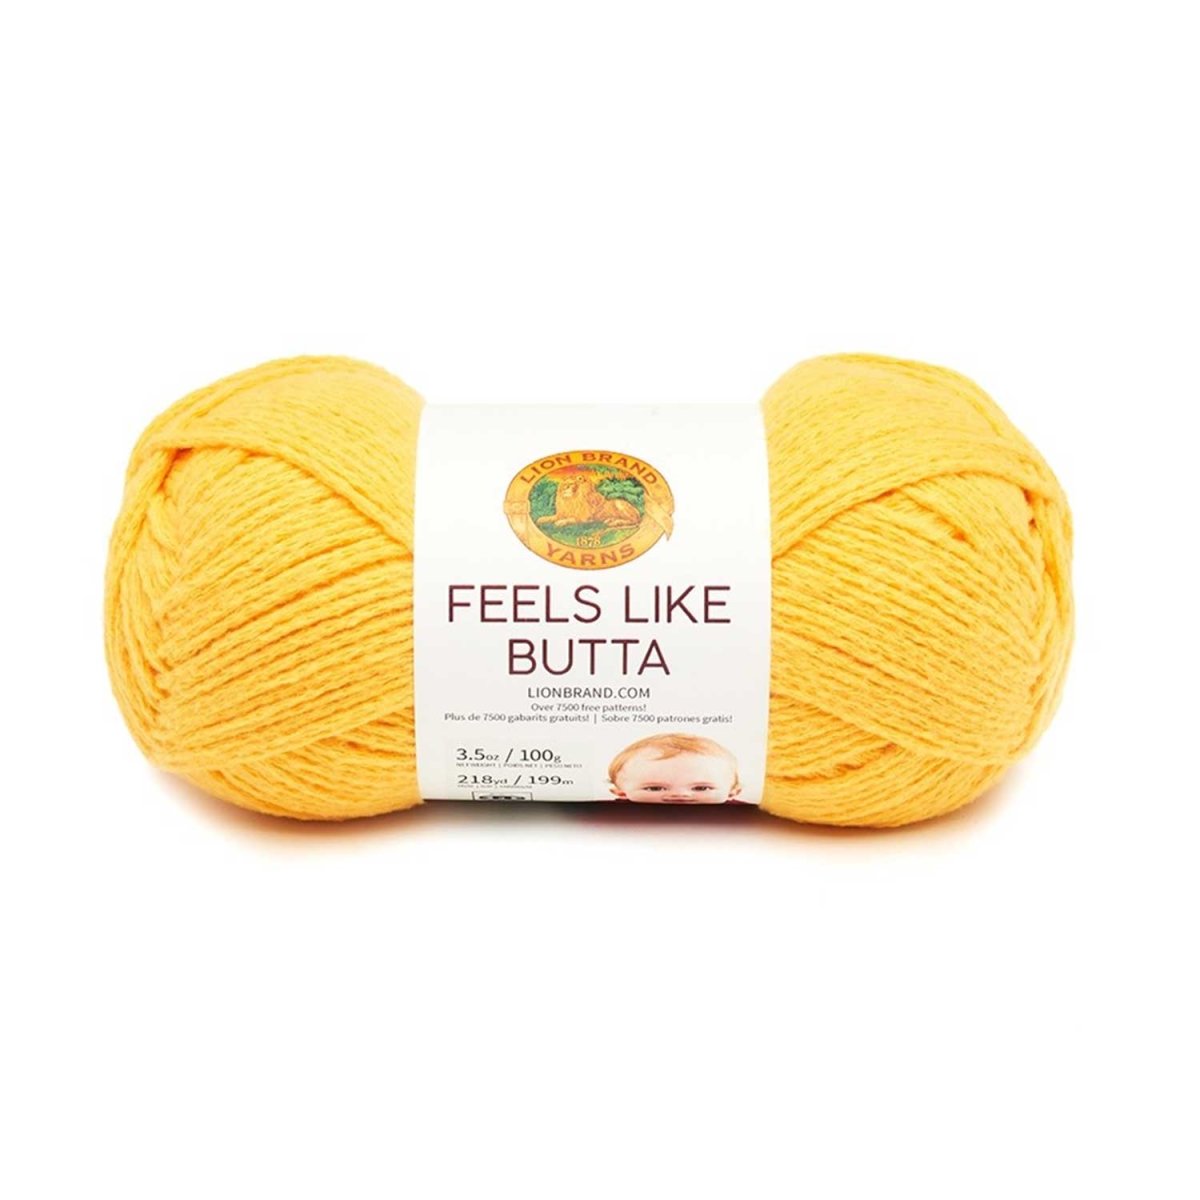 FEELS LIKE BUTTA - Crochetstores215-157